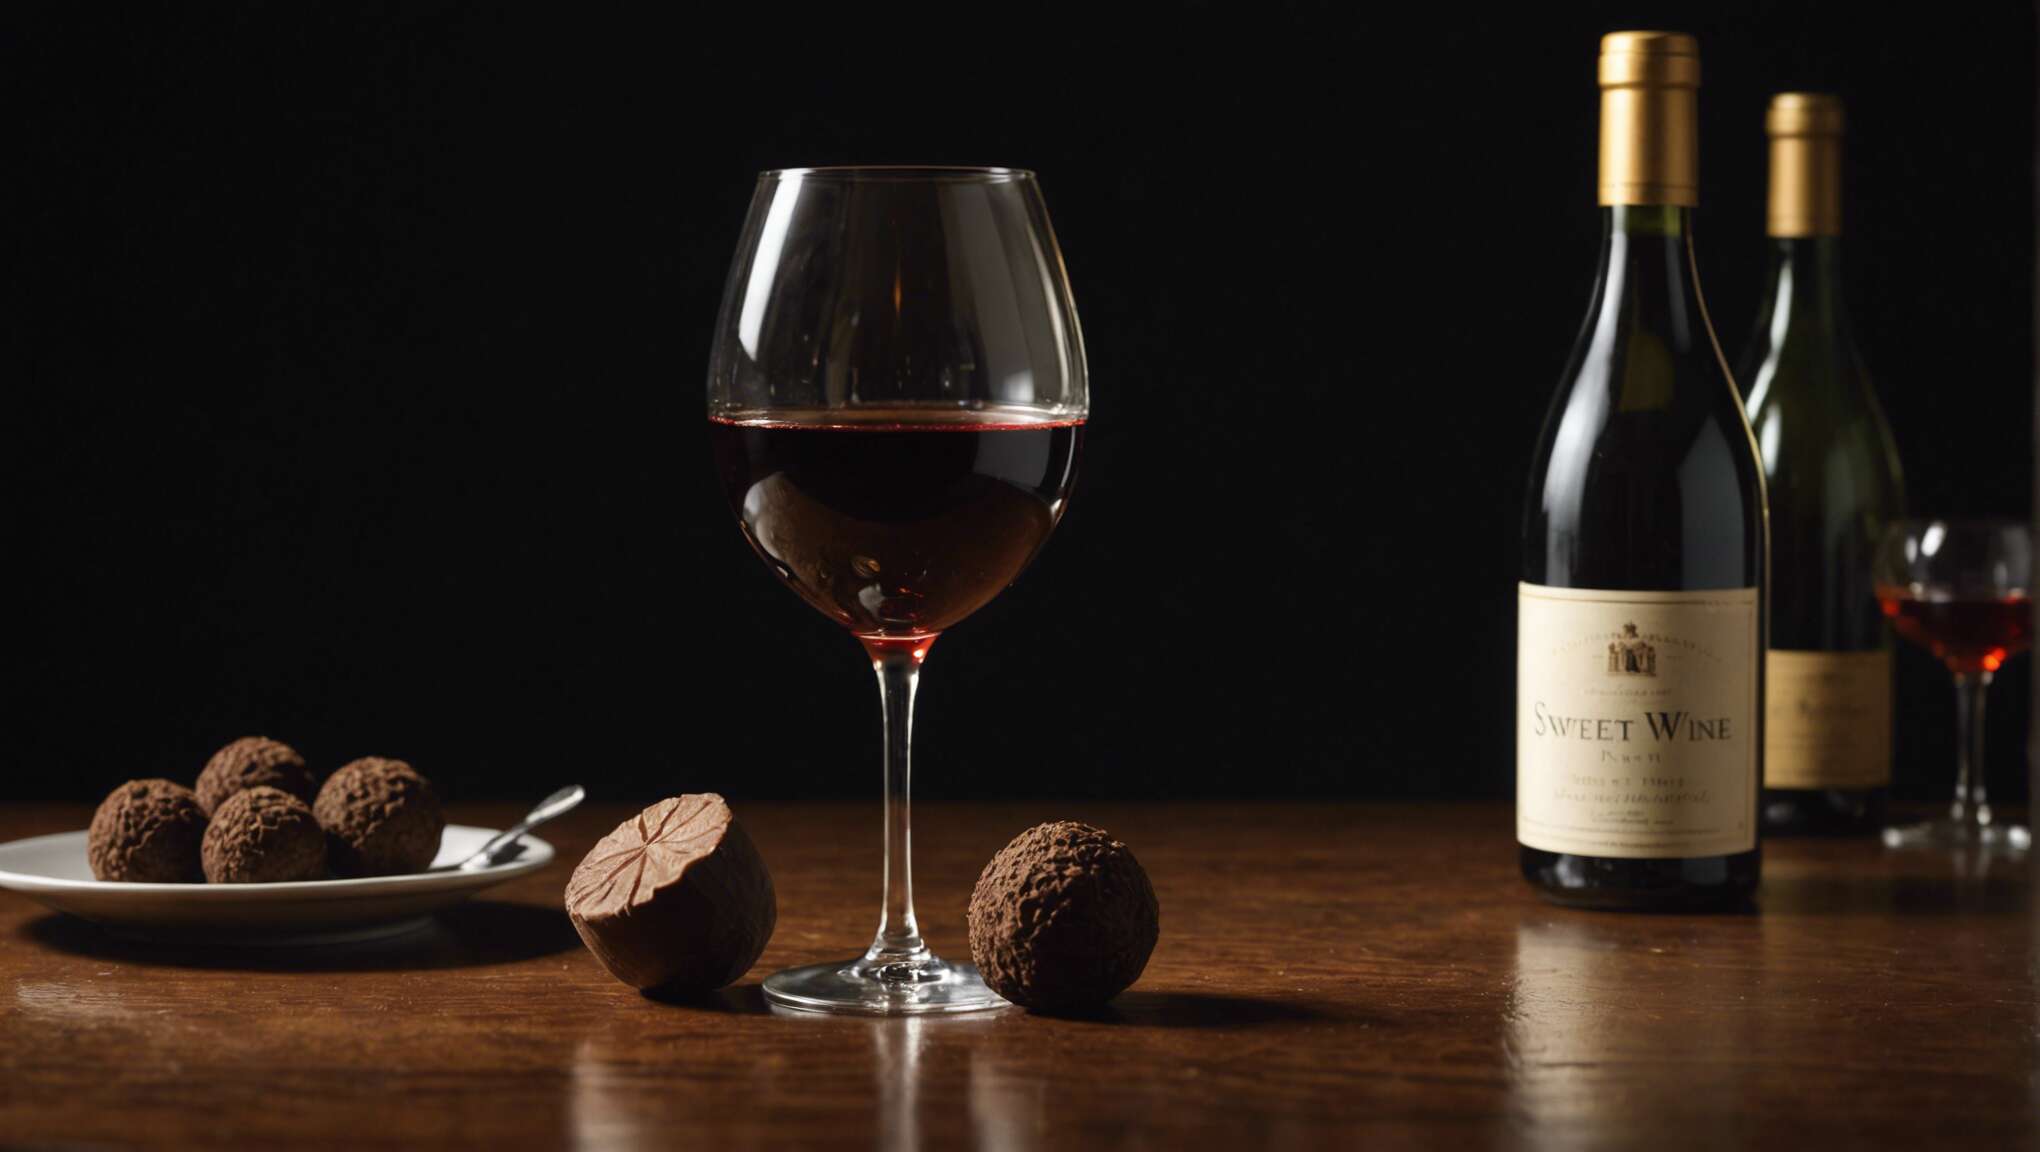 La truffe et ses accords vins : introduction aux variétés et saveurs